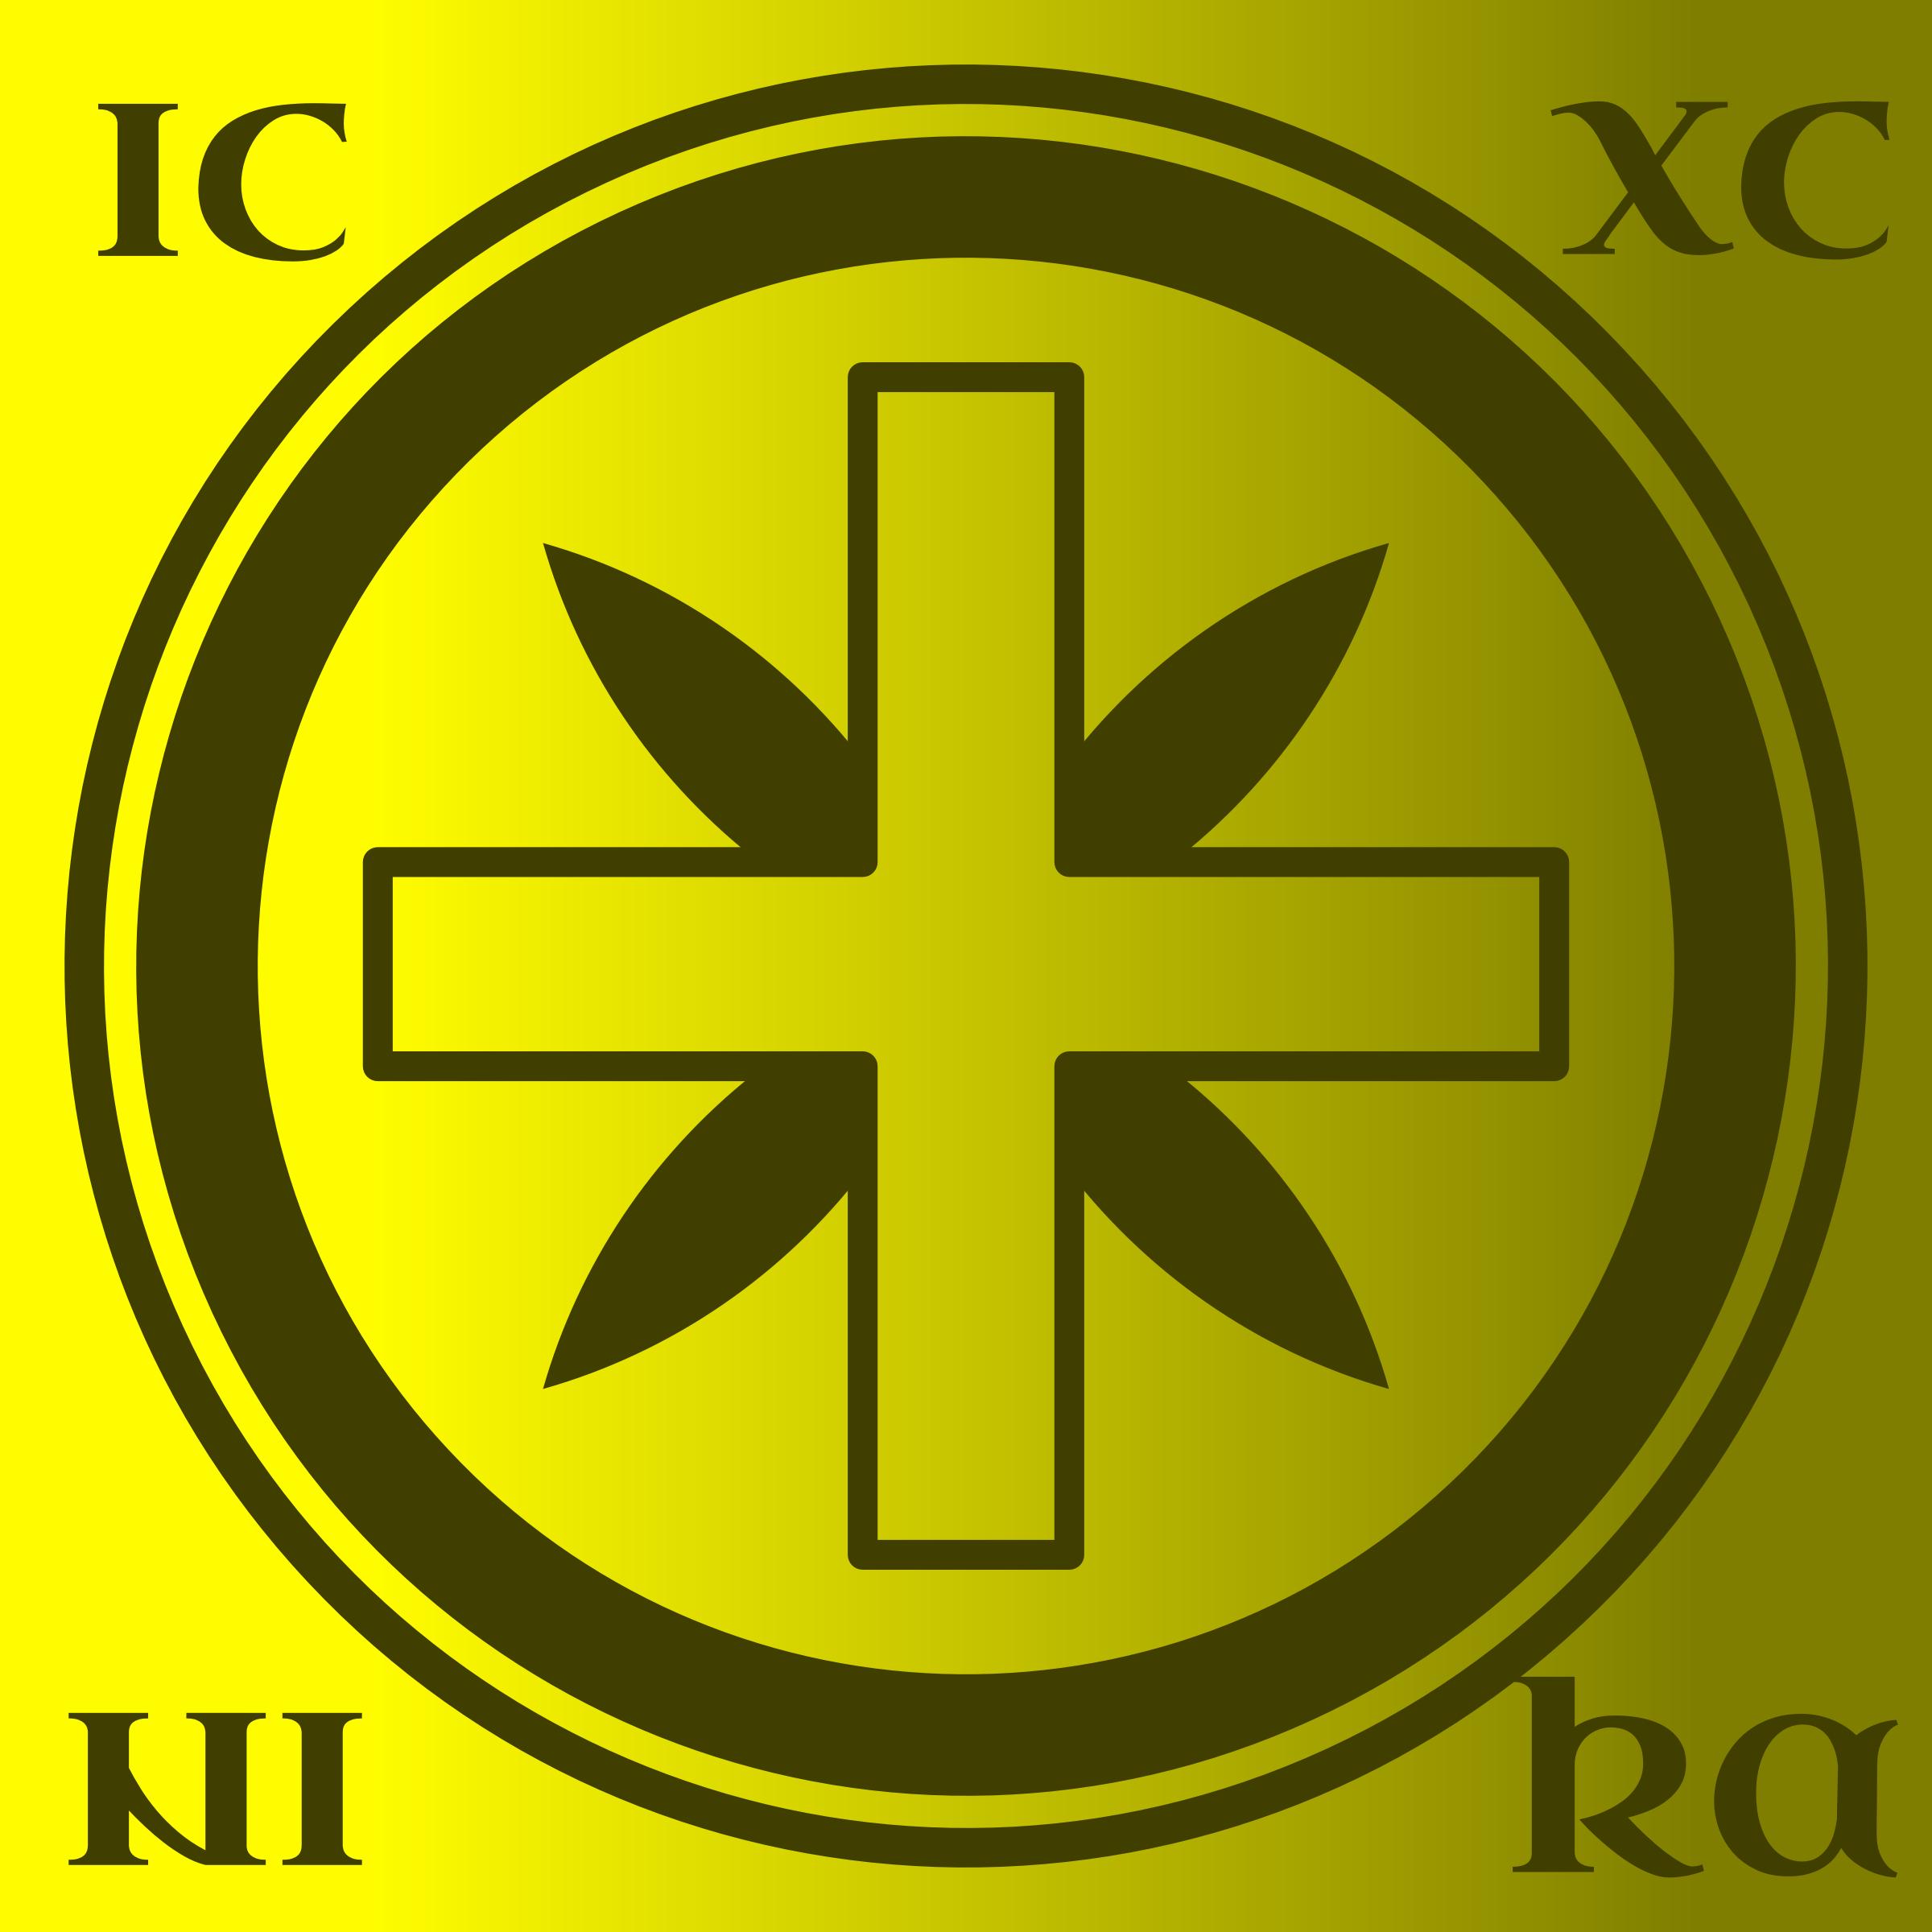 Cross in Circle IC XC NIKA png